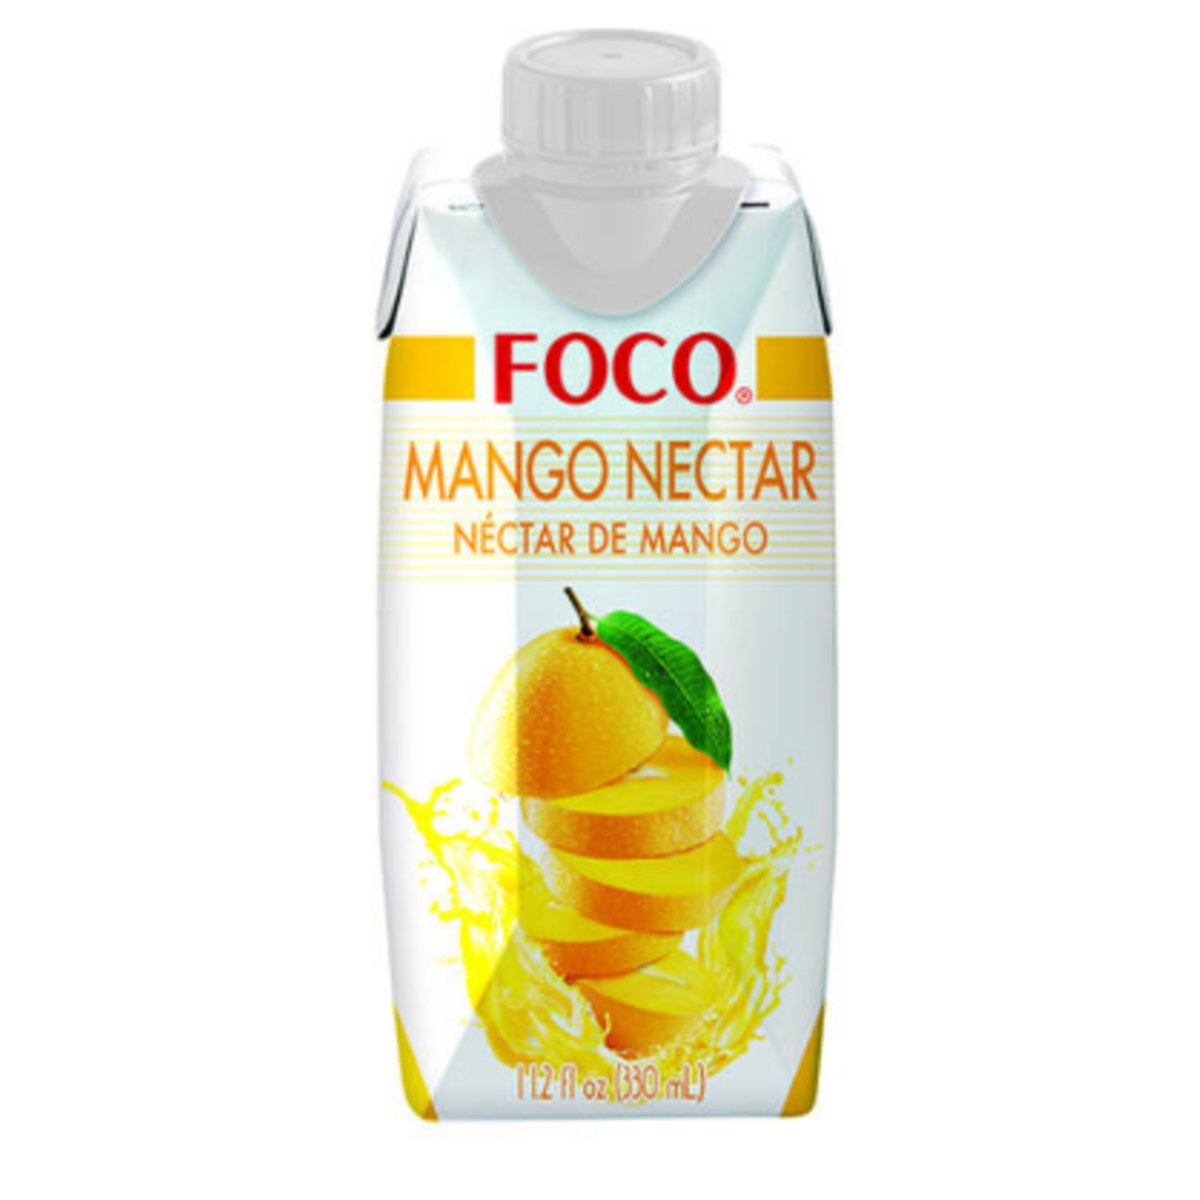 Нектар тела. Нектар foco манго 330 мл Tetra Pak. Нектар foco манго, 0.33 л. Кокосовая вода с манго foco 330мл. Кокосовая вода нектар манго foco 330 мл..